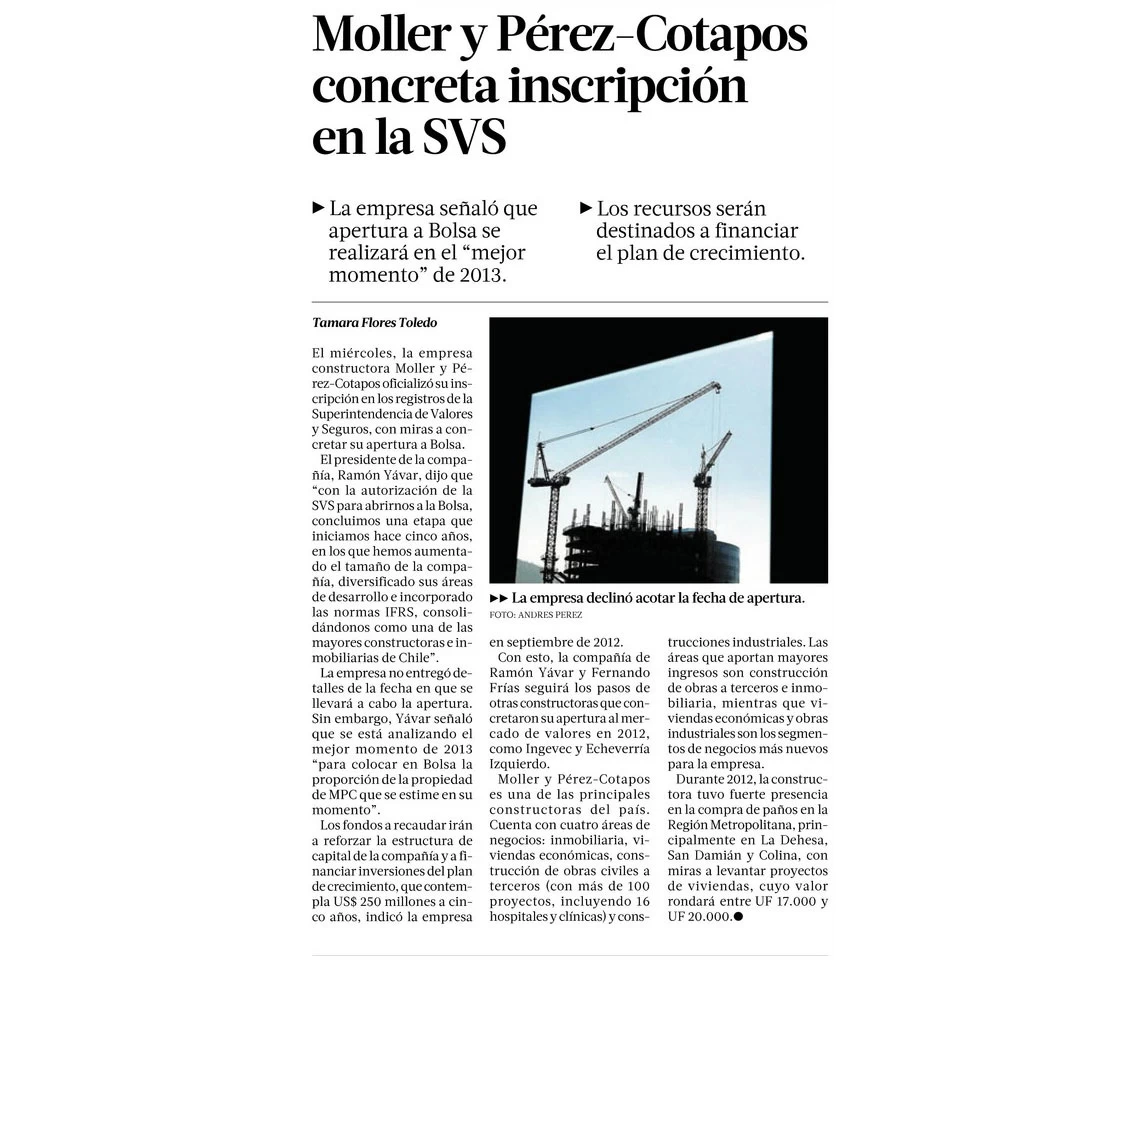 Moller y Pérez - Cotapos concreta inscripción en la SVS